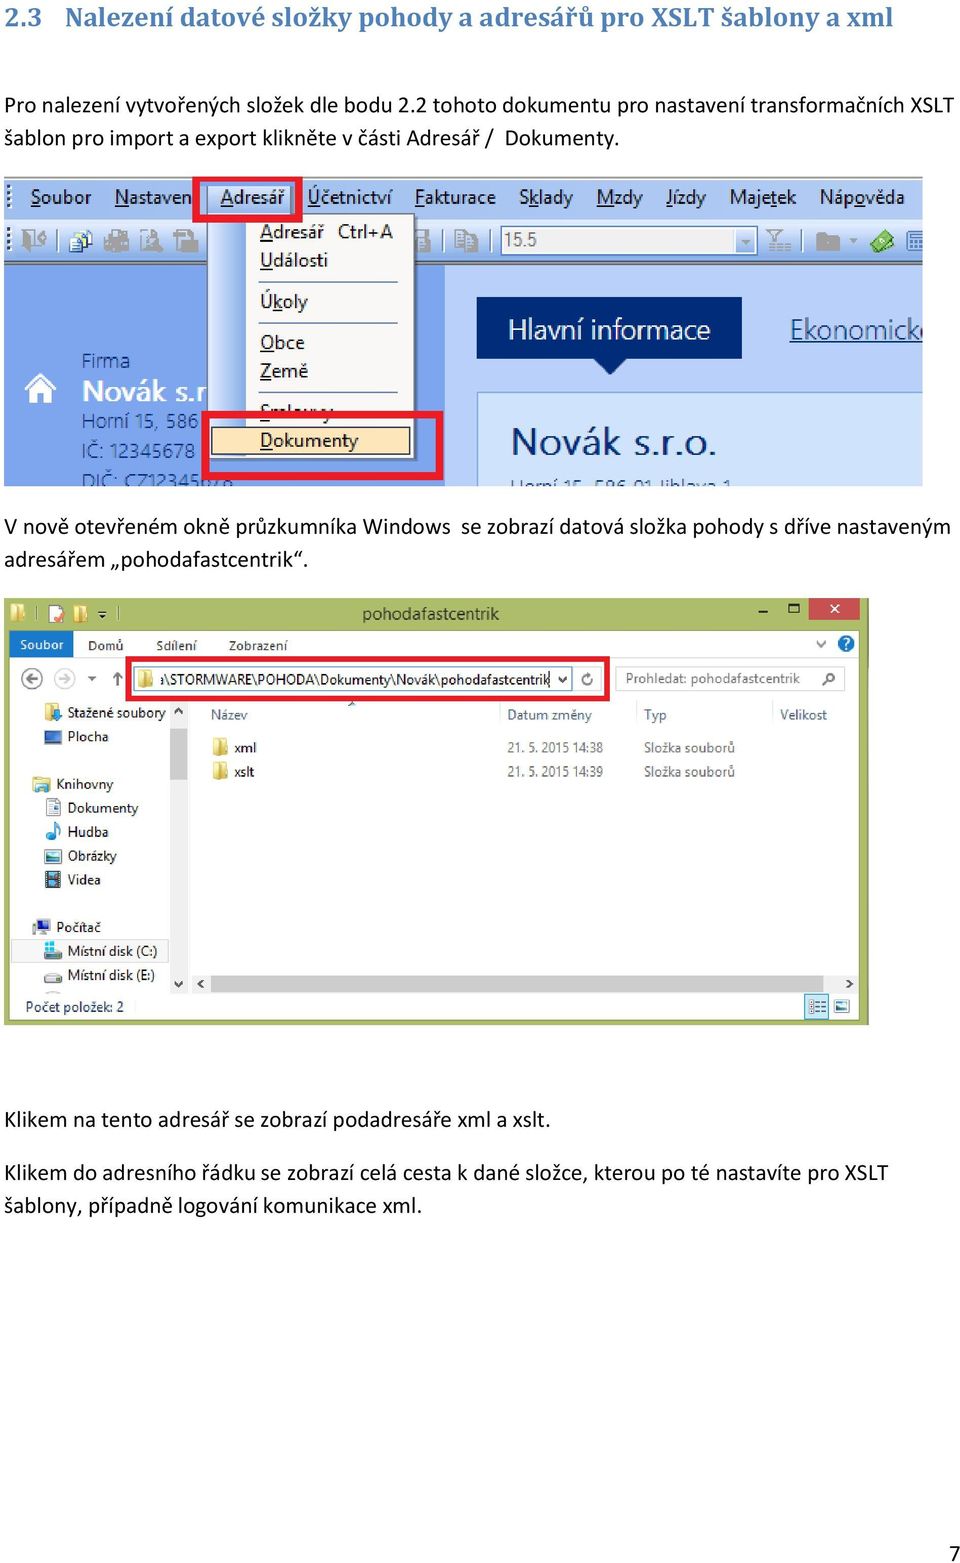 V nově otevřeném okně průzkumníka Windows se zobrazí datová složka pohody s dříve nastaveným adresářem pohodafastcentrik.